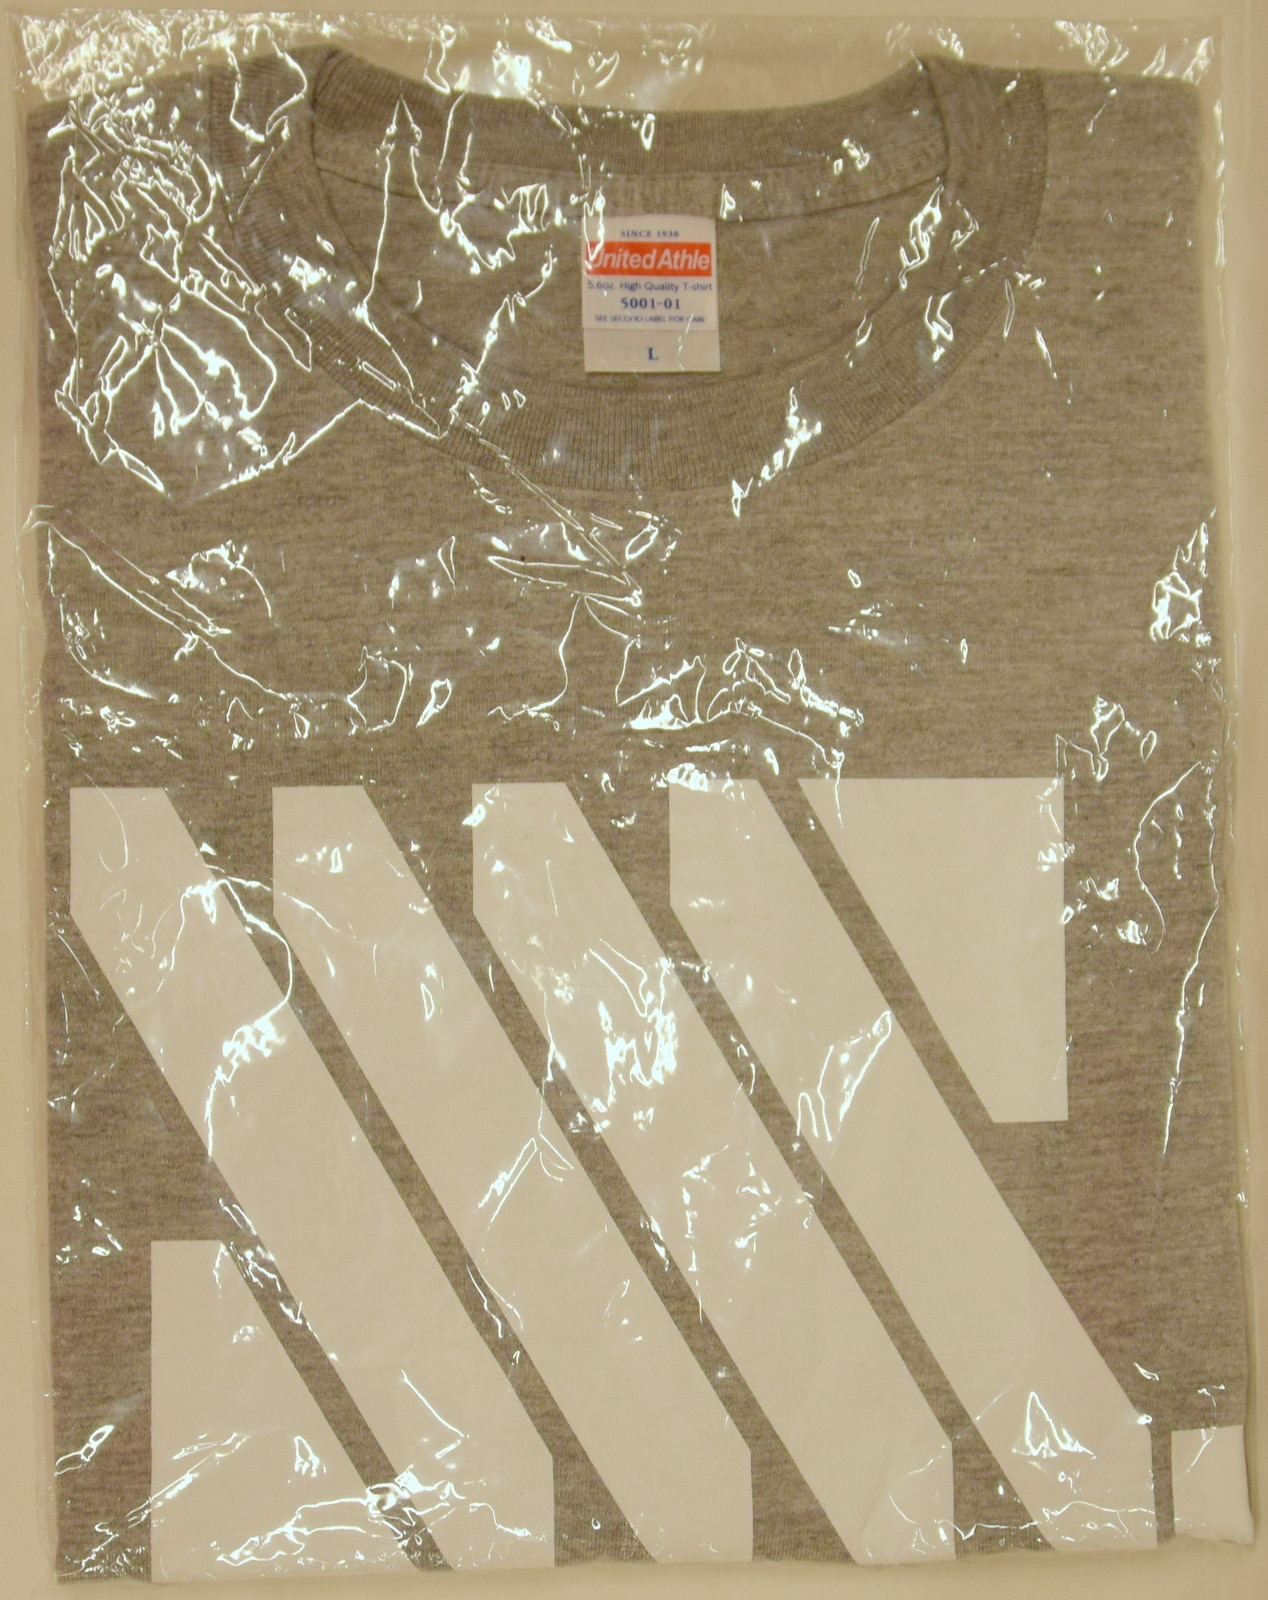 ポニーキャニオン Ssss Gridman Show 01 Tシャツ ロゴ グレー Lサイズ 日本サイズ まんだらけ Mandarake